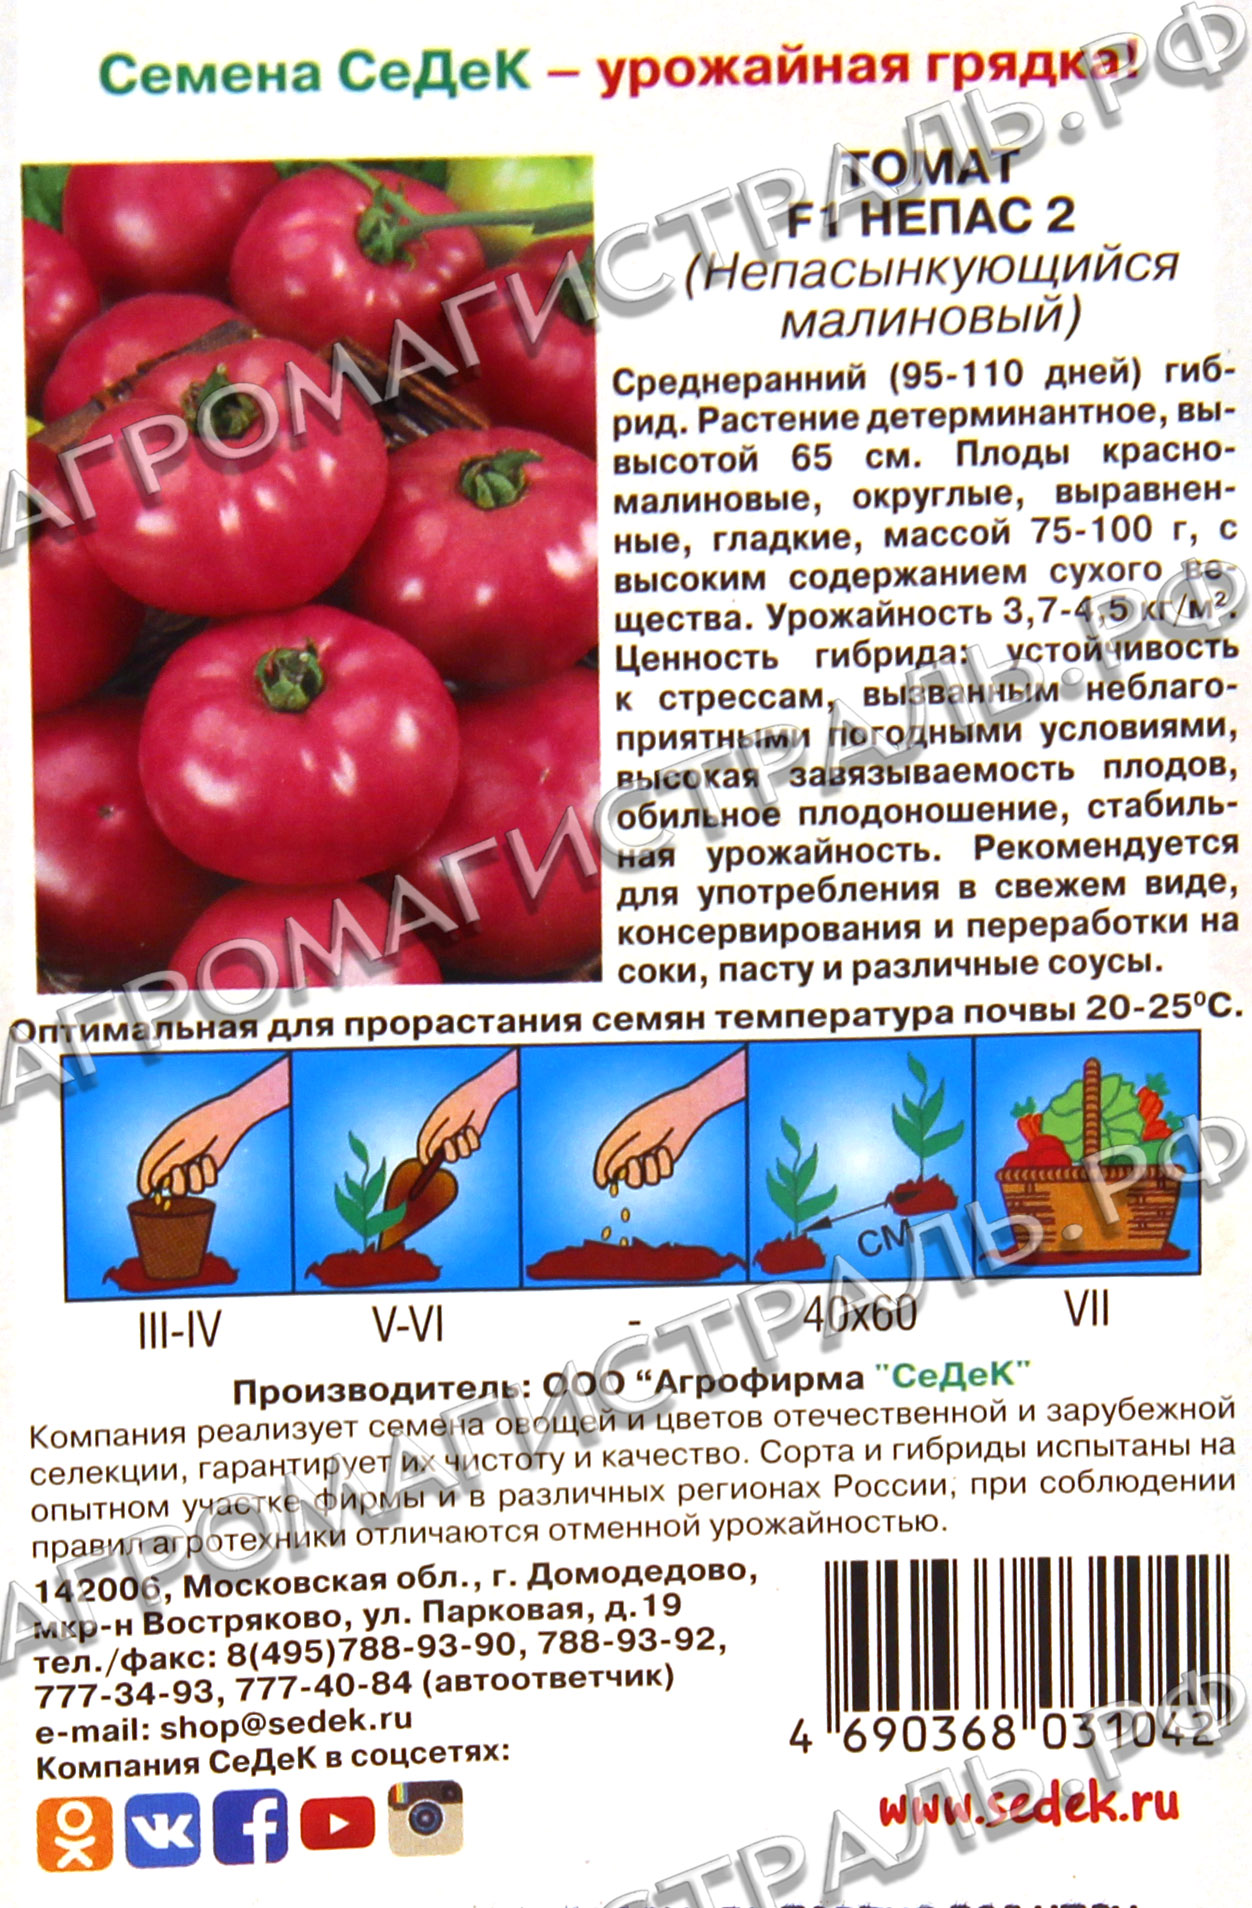 Описание ультраскороспелого сорта томата филиппок и особенности ухода